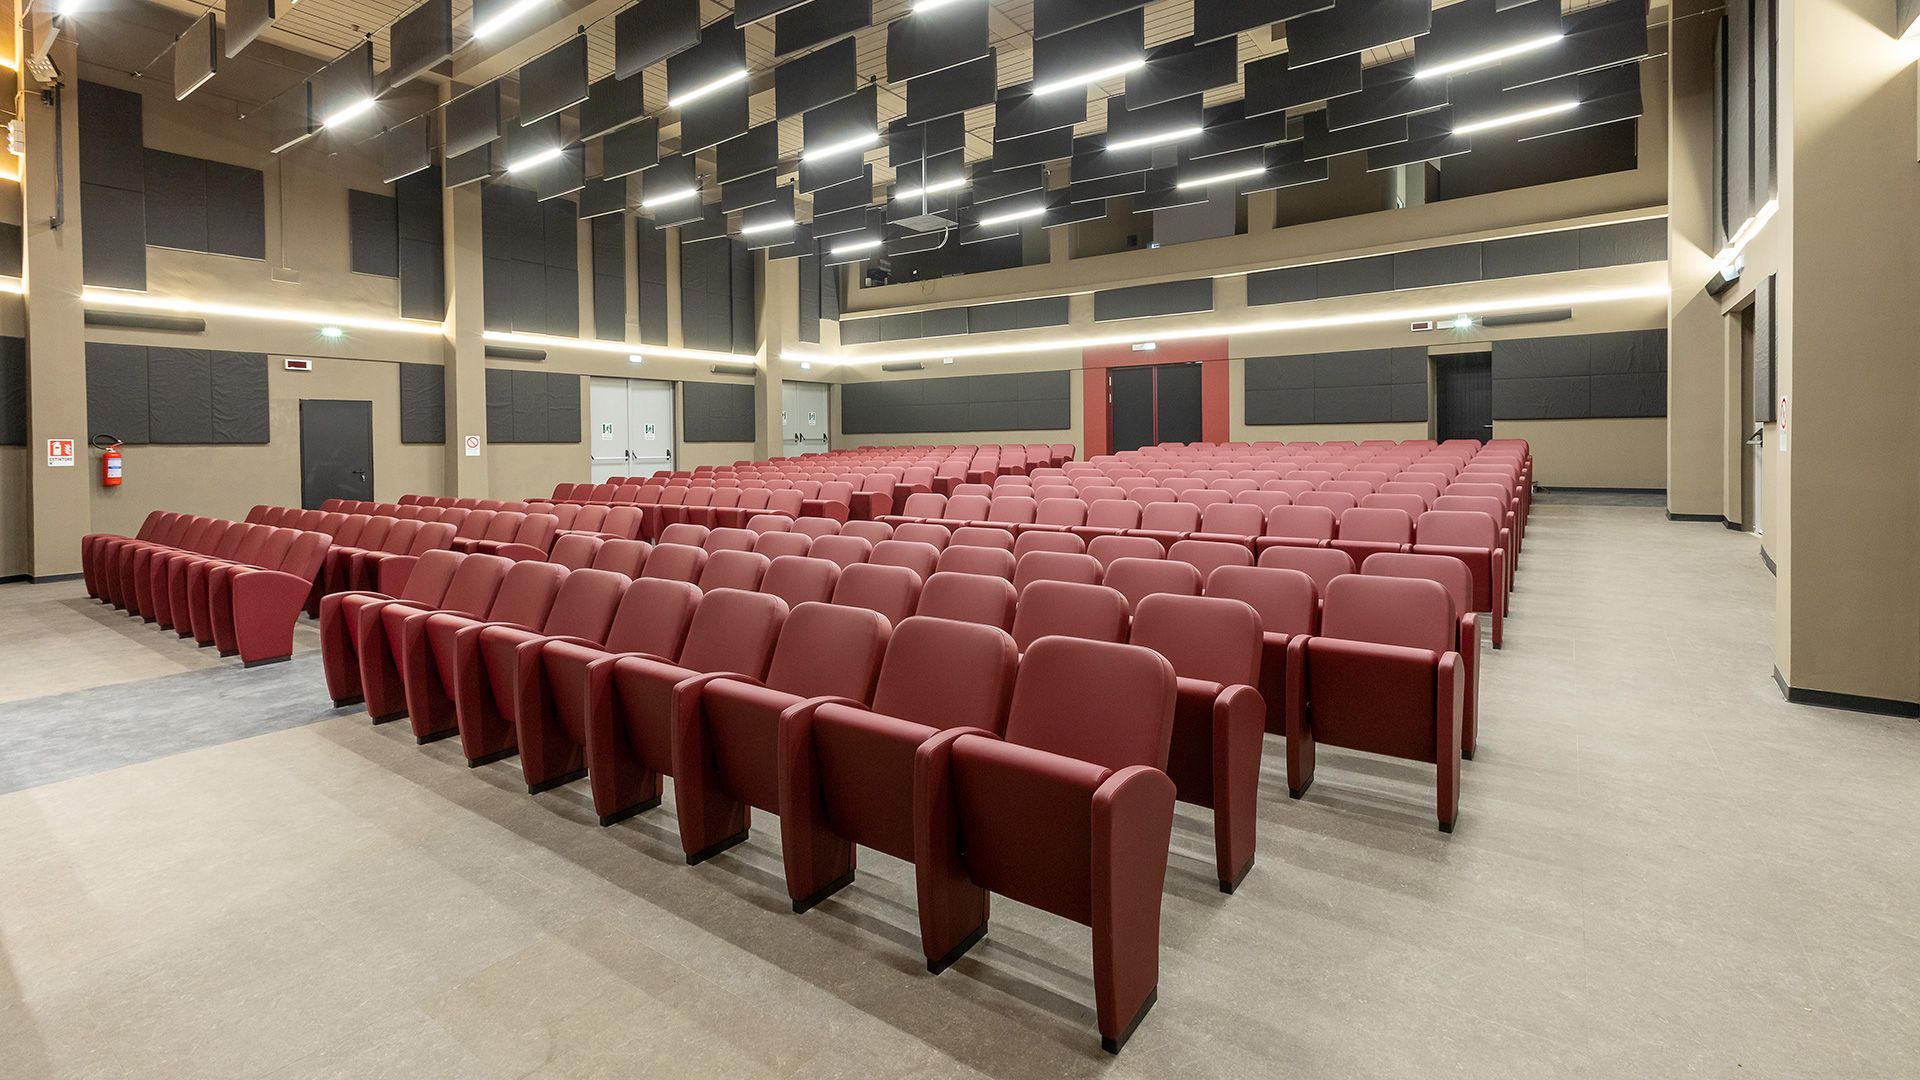 Realizzazione cineteatro comunale “Sala Zambra”, per la città di Ortona (CH), Italia